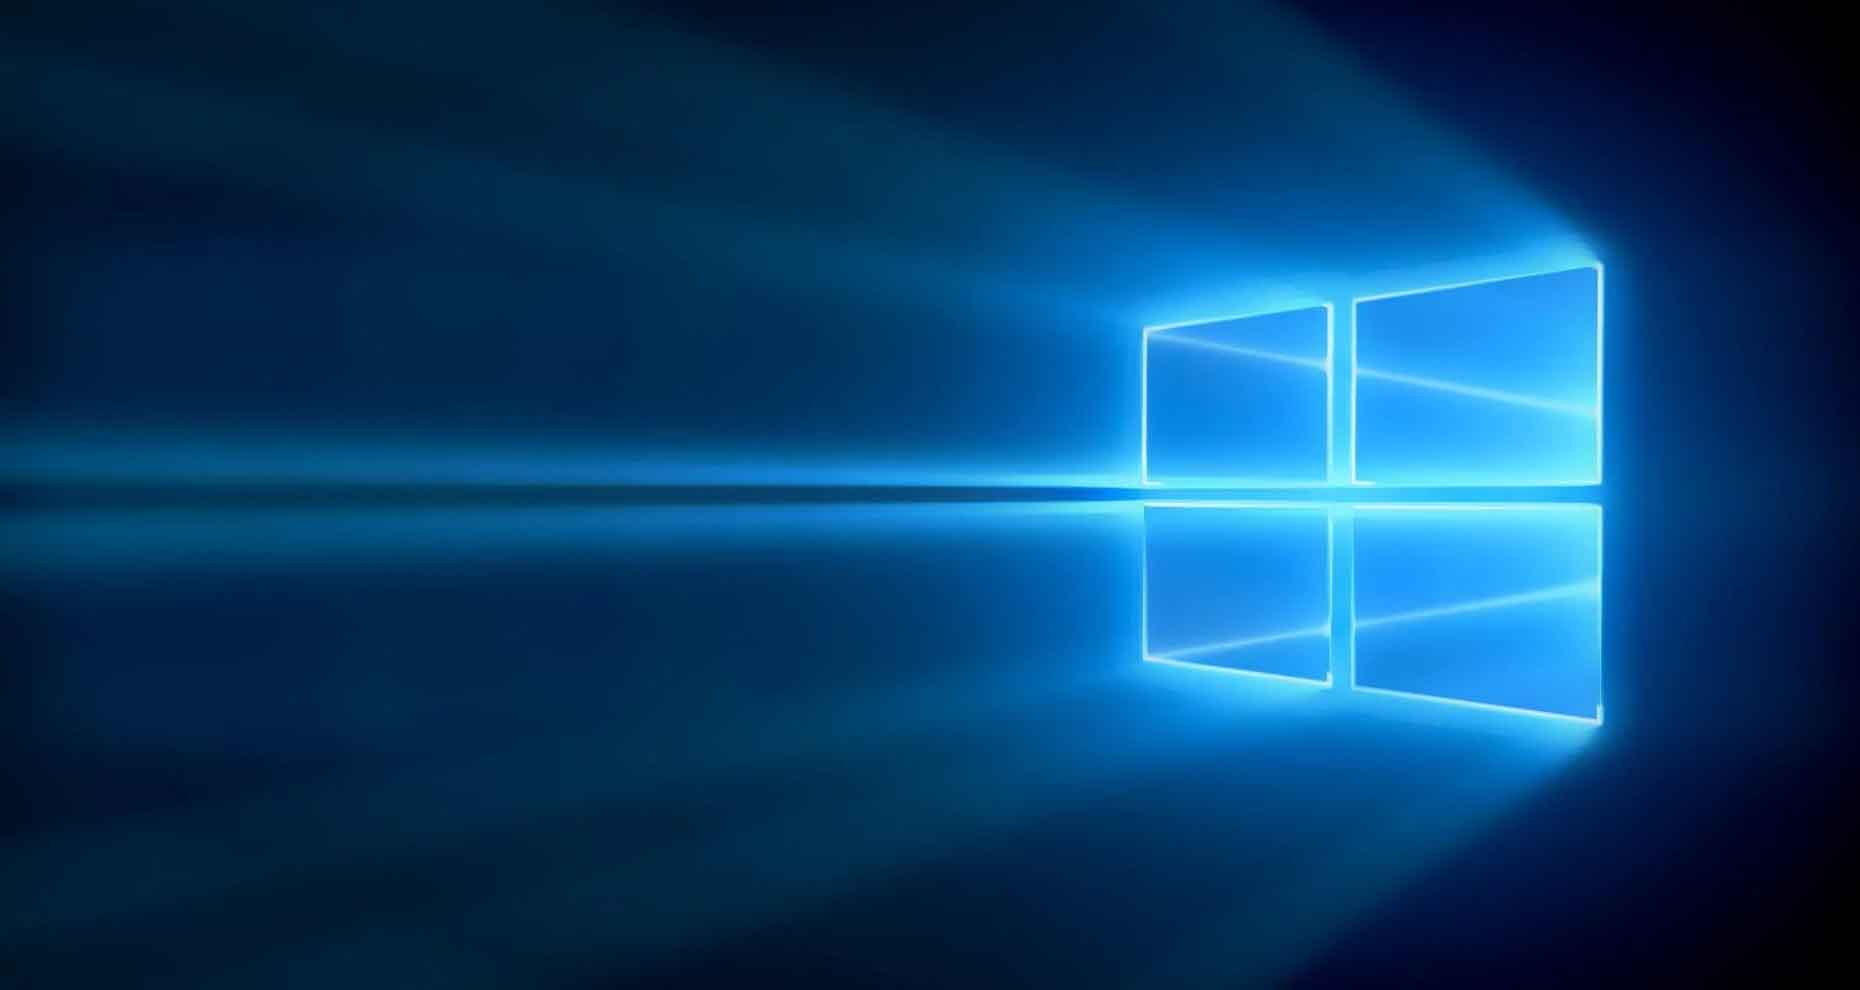 Windows 10 de Microsoft